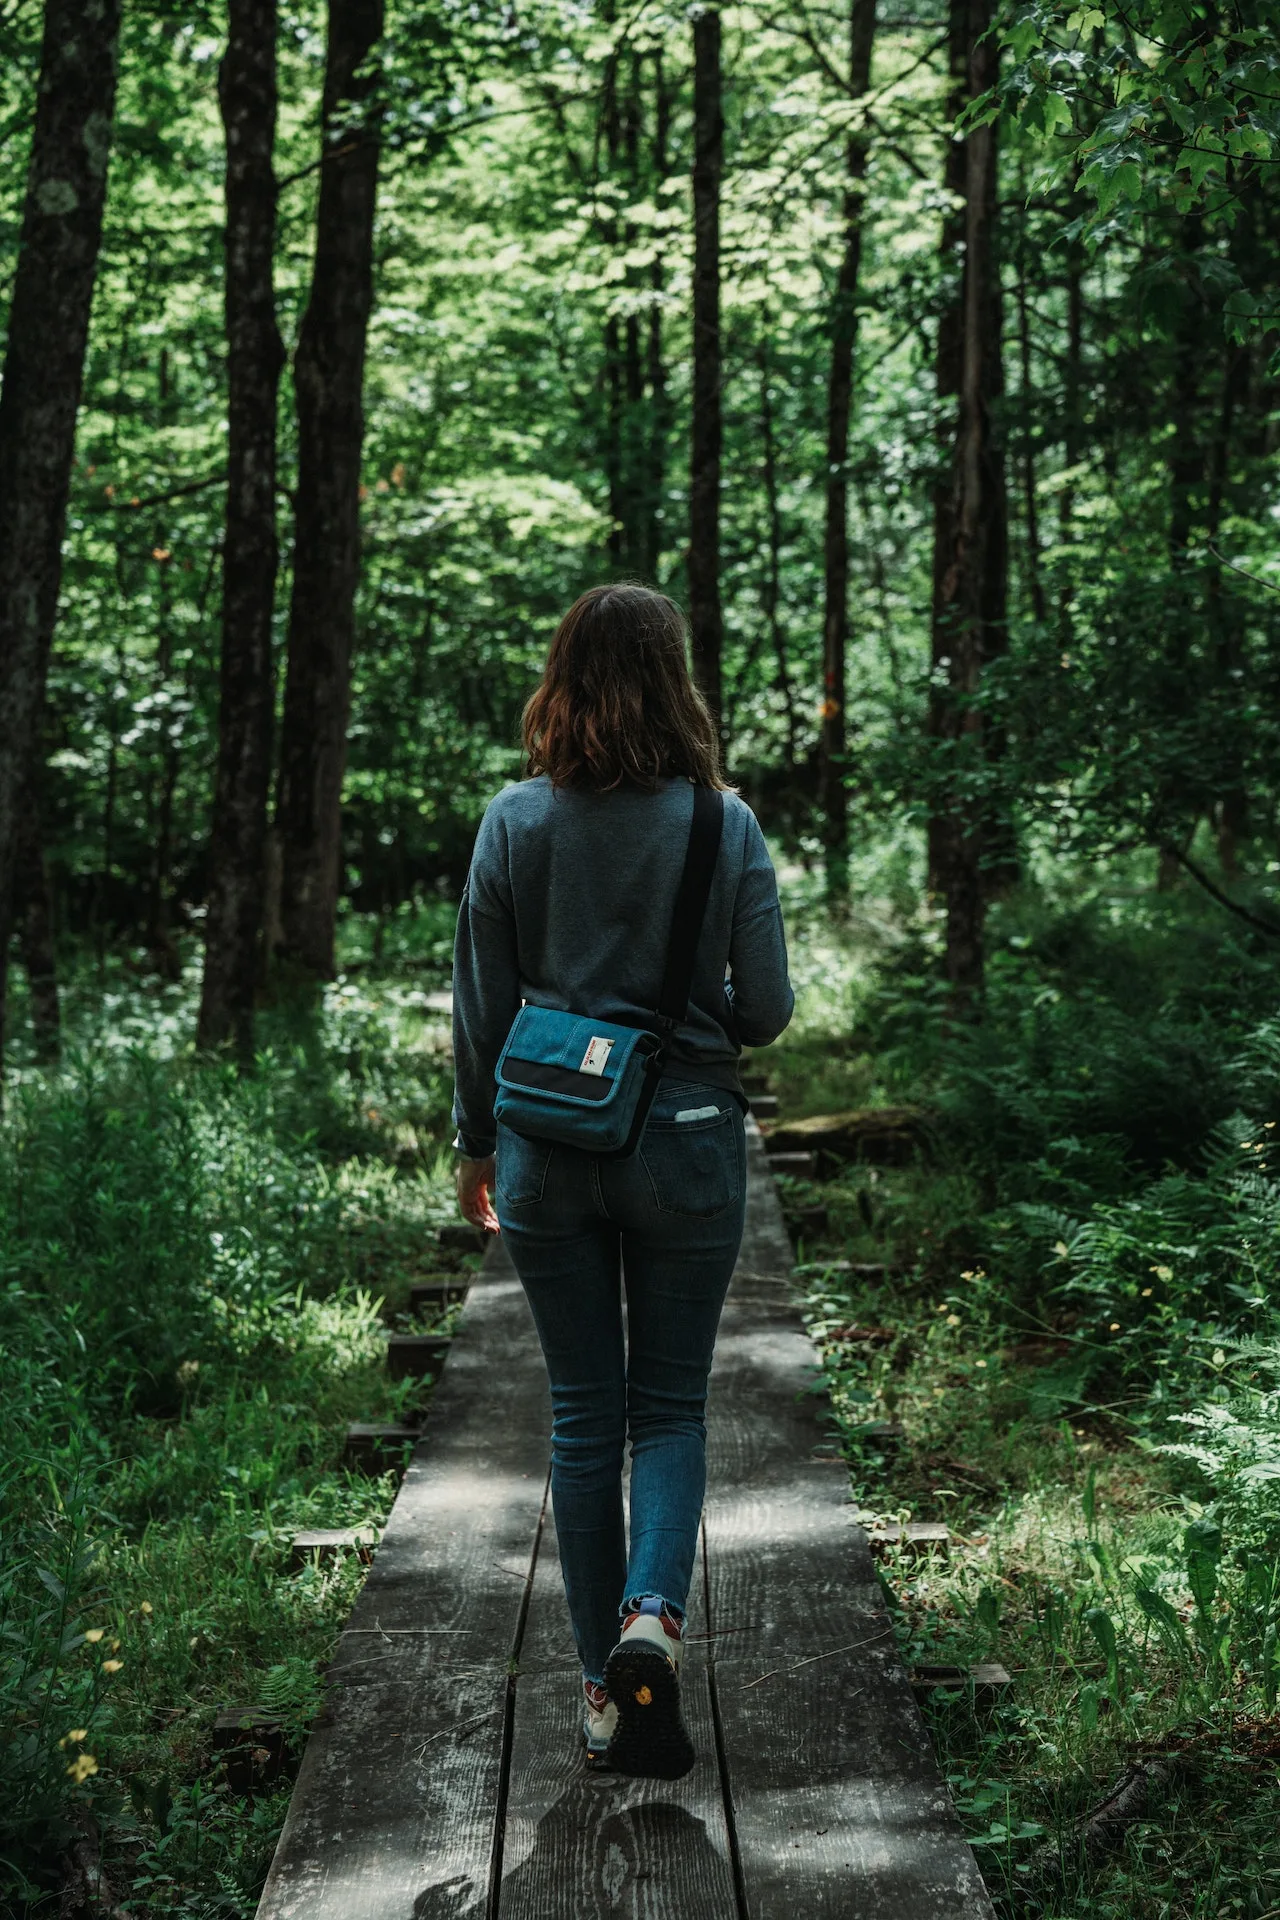 bosco: camminare nell foresta